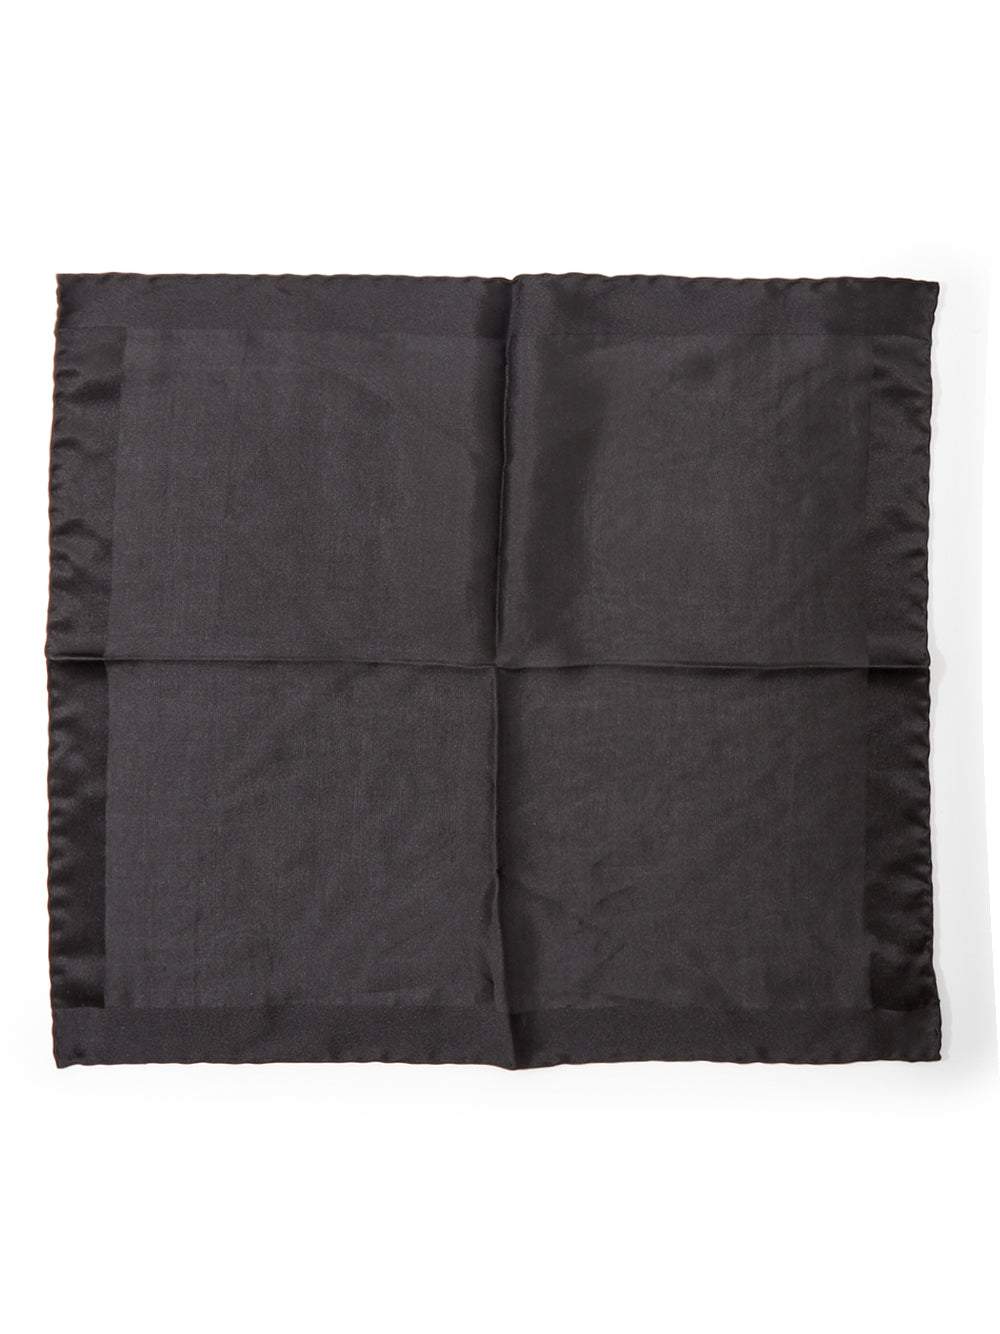 Tom Ford Black Silk Clutch Bag